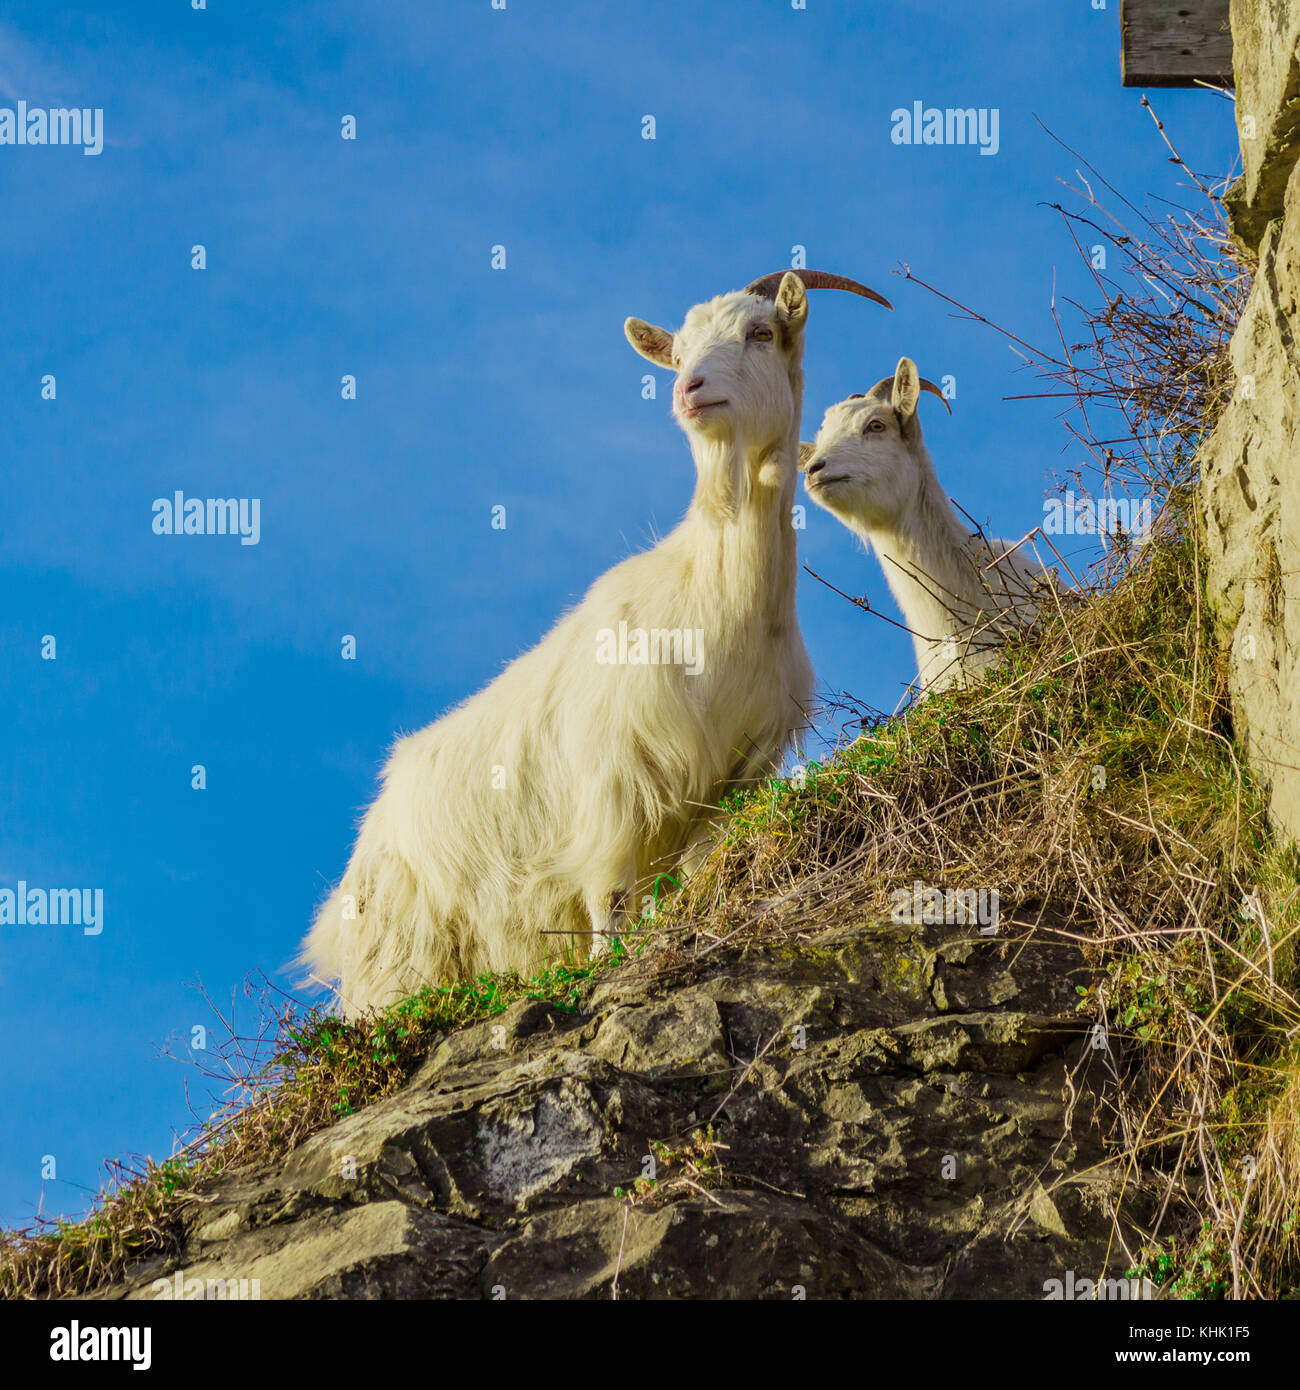 Zwei Ziegen steht auf einem Felsen mit grünem Gras auf blauen Himmel Hintergrund abgedeckt. geschossen wird in Karpaten, Ukraine, Europa übernommen. Stockfoto